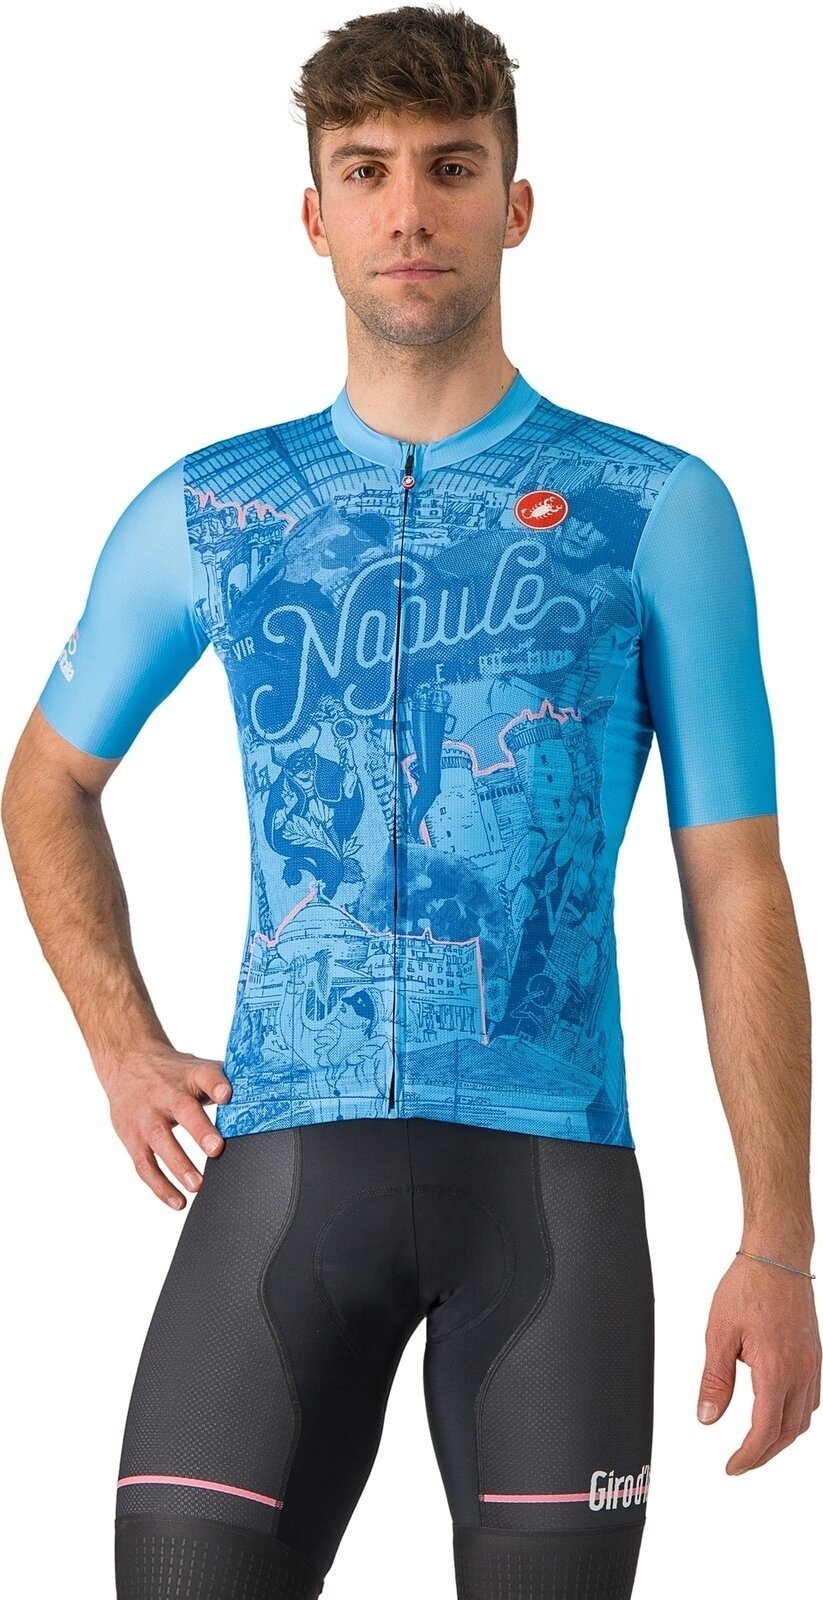 Jersey/T-Shirt Castelli Giro107 Napoli Jersey Azzurro Napoli XL